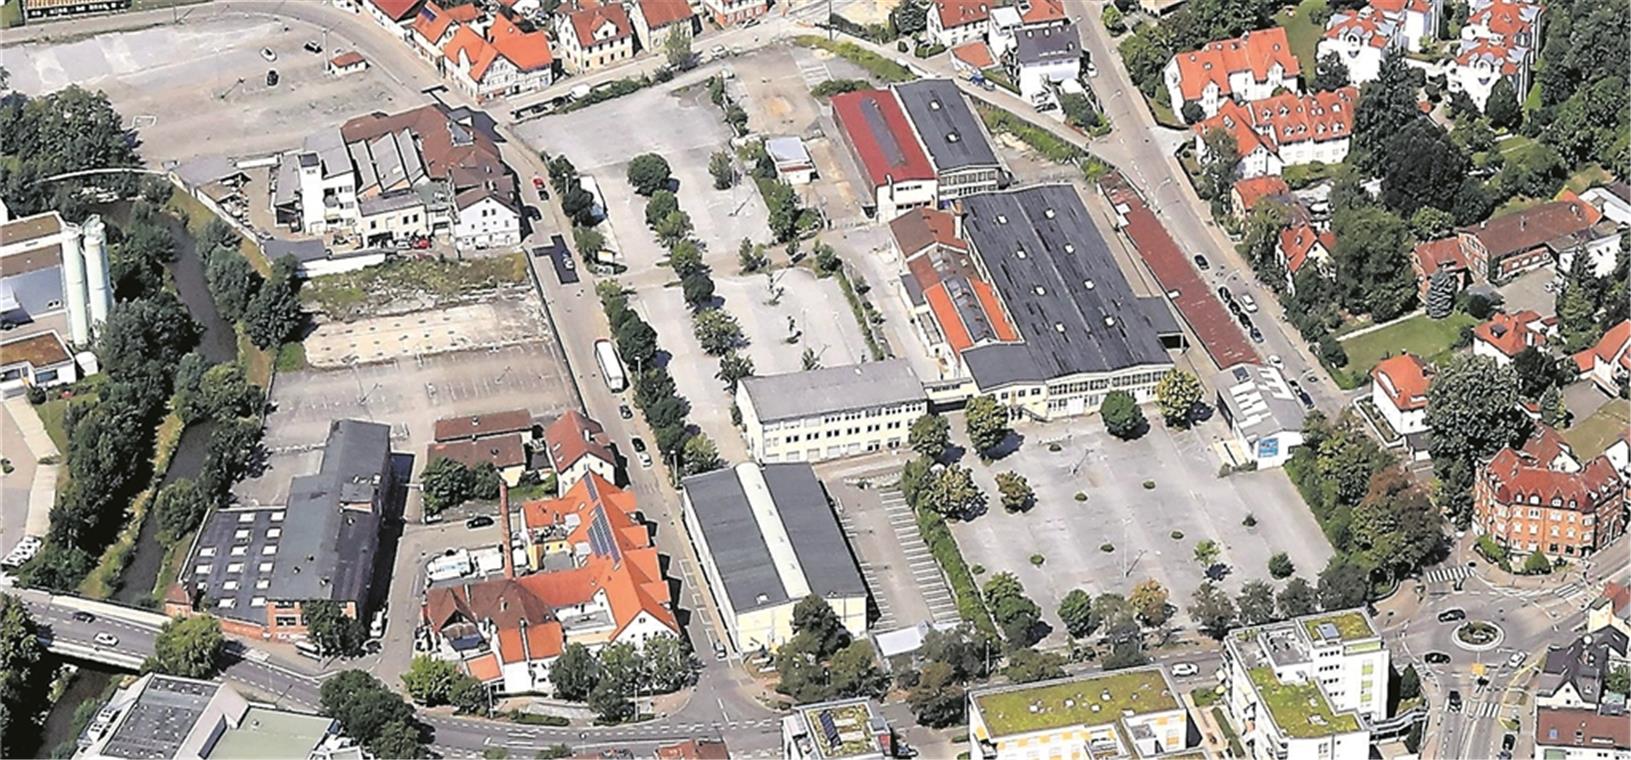 Das ehemalige Kaelble-Areal in Backnang liegt größtenteils brach oder wird als Parkplatz genutzt. Investor Hermann Püttmer hat für das Gelände große Pläne. Foto: F. Muhl